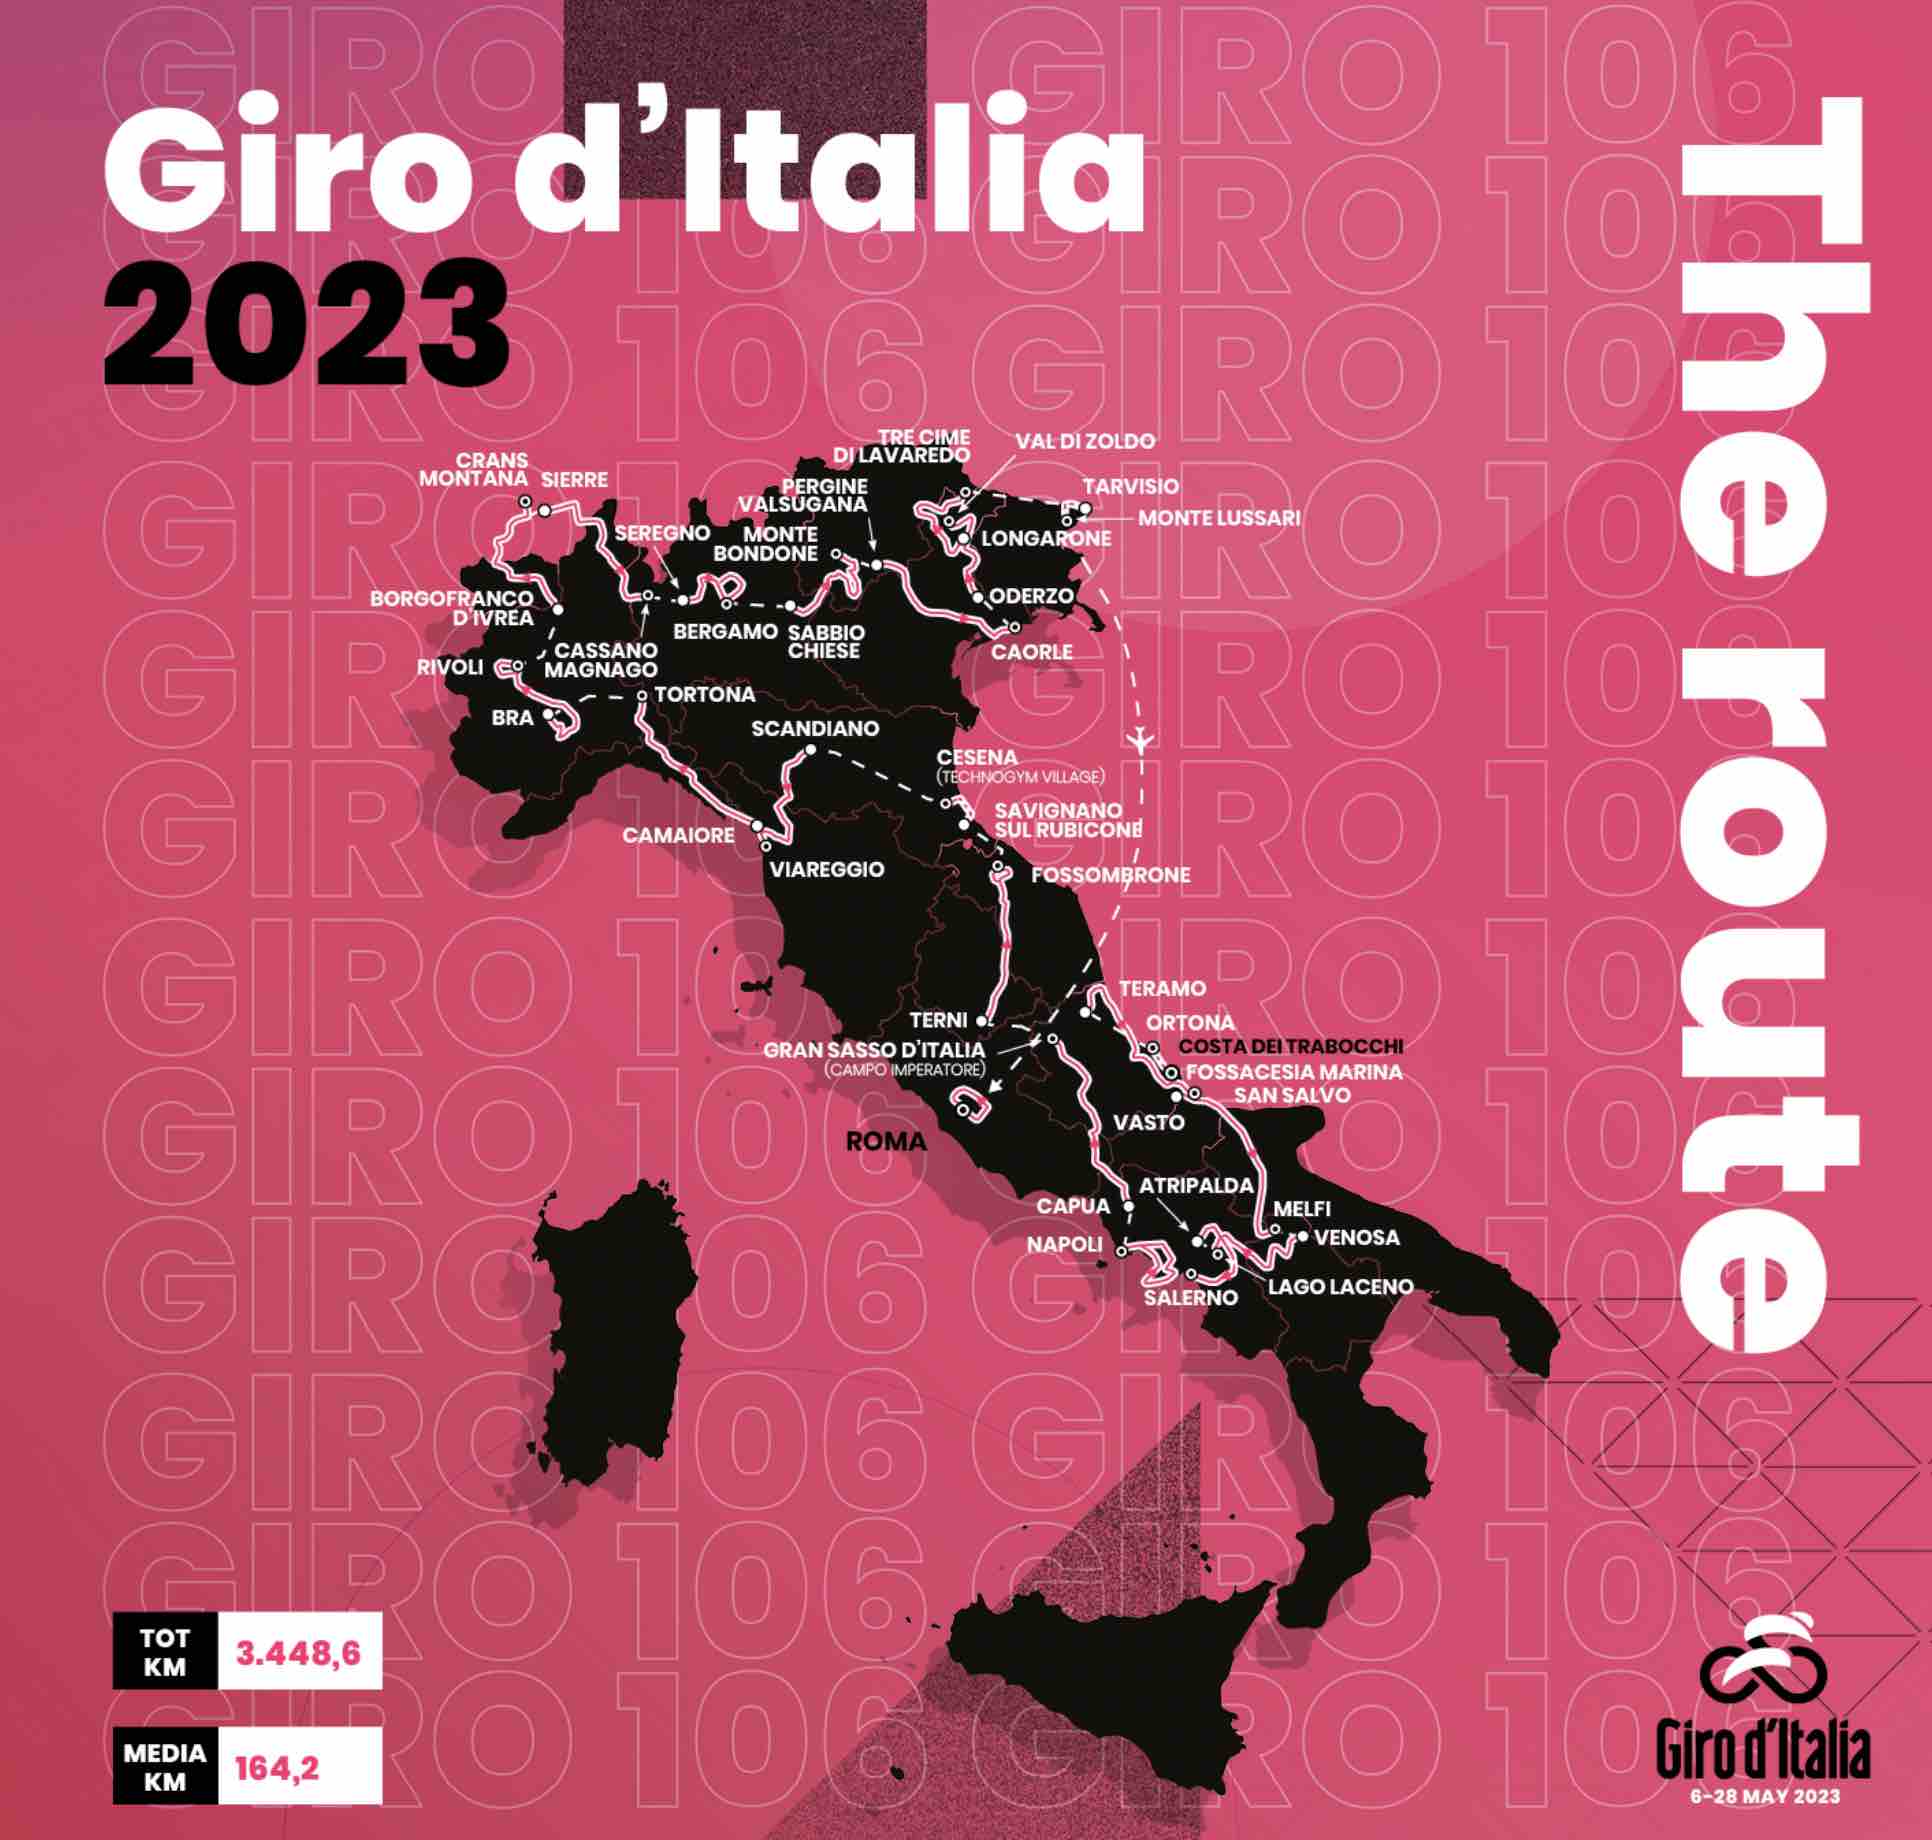 tour d'italie 2023 live